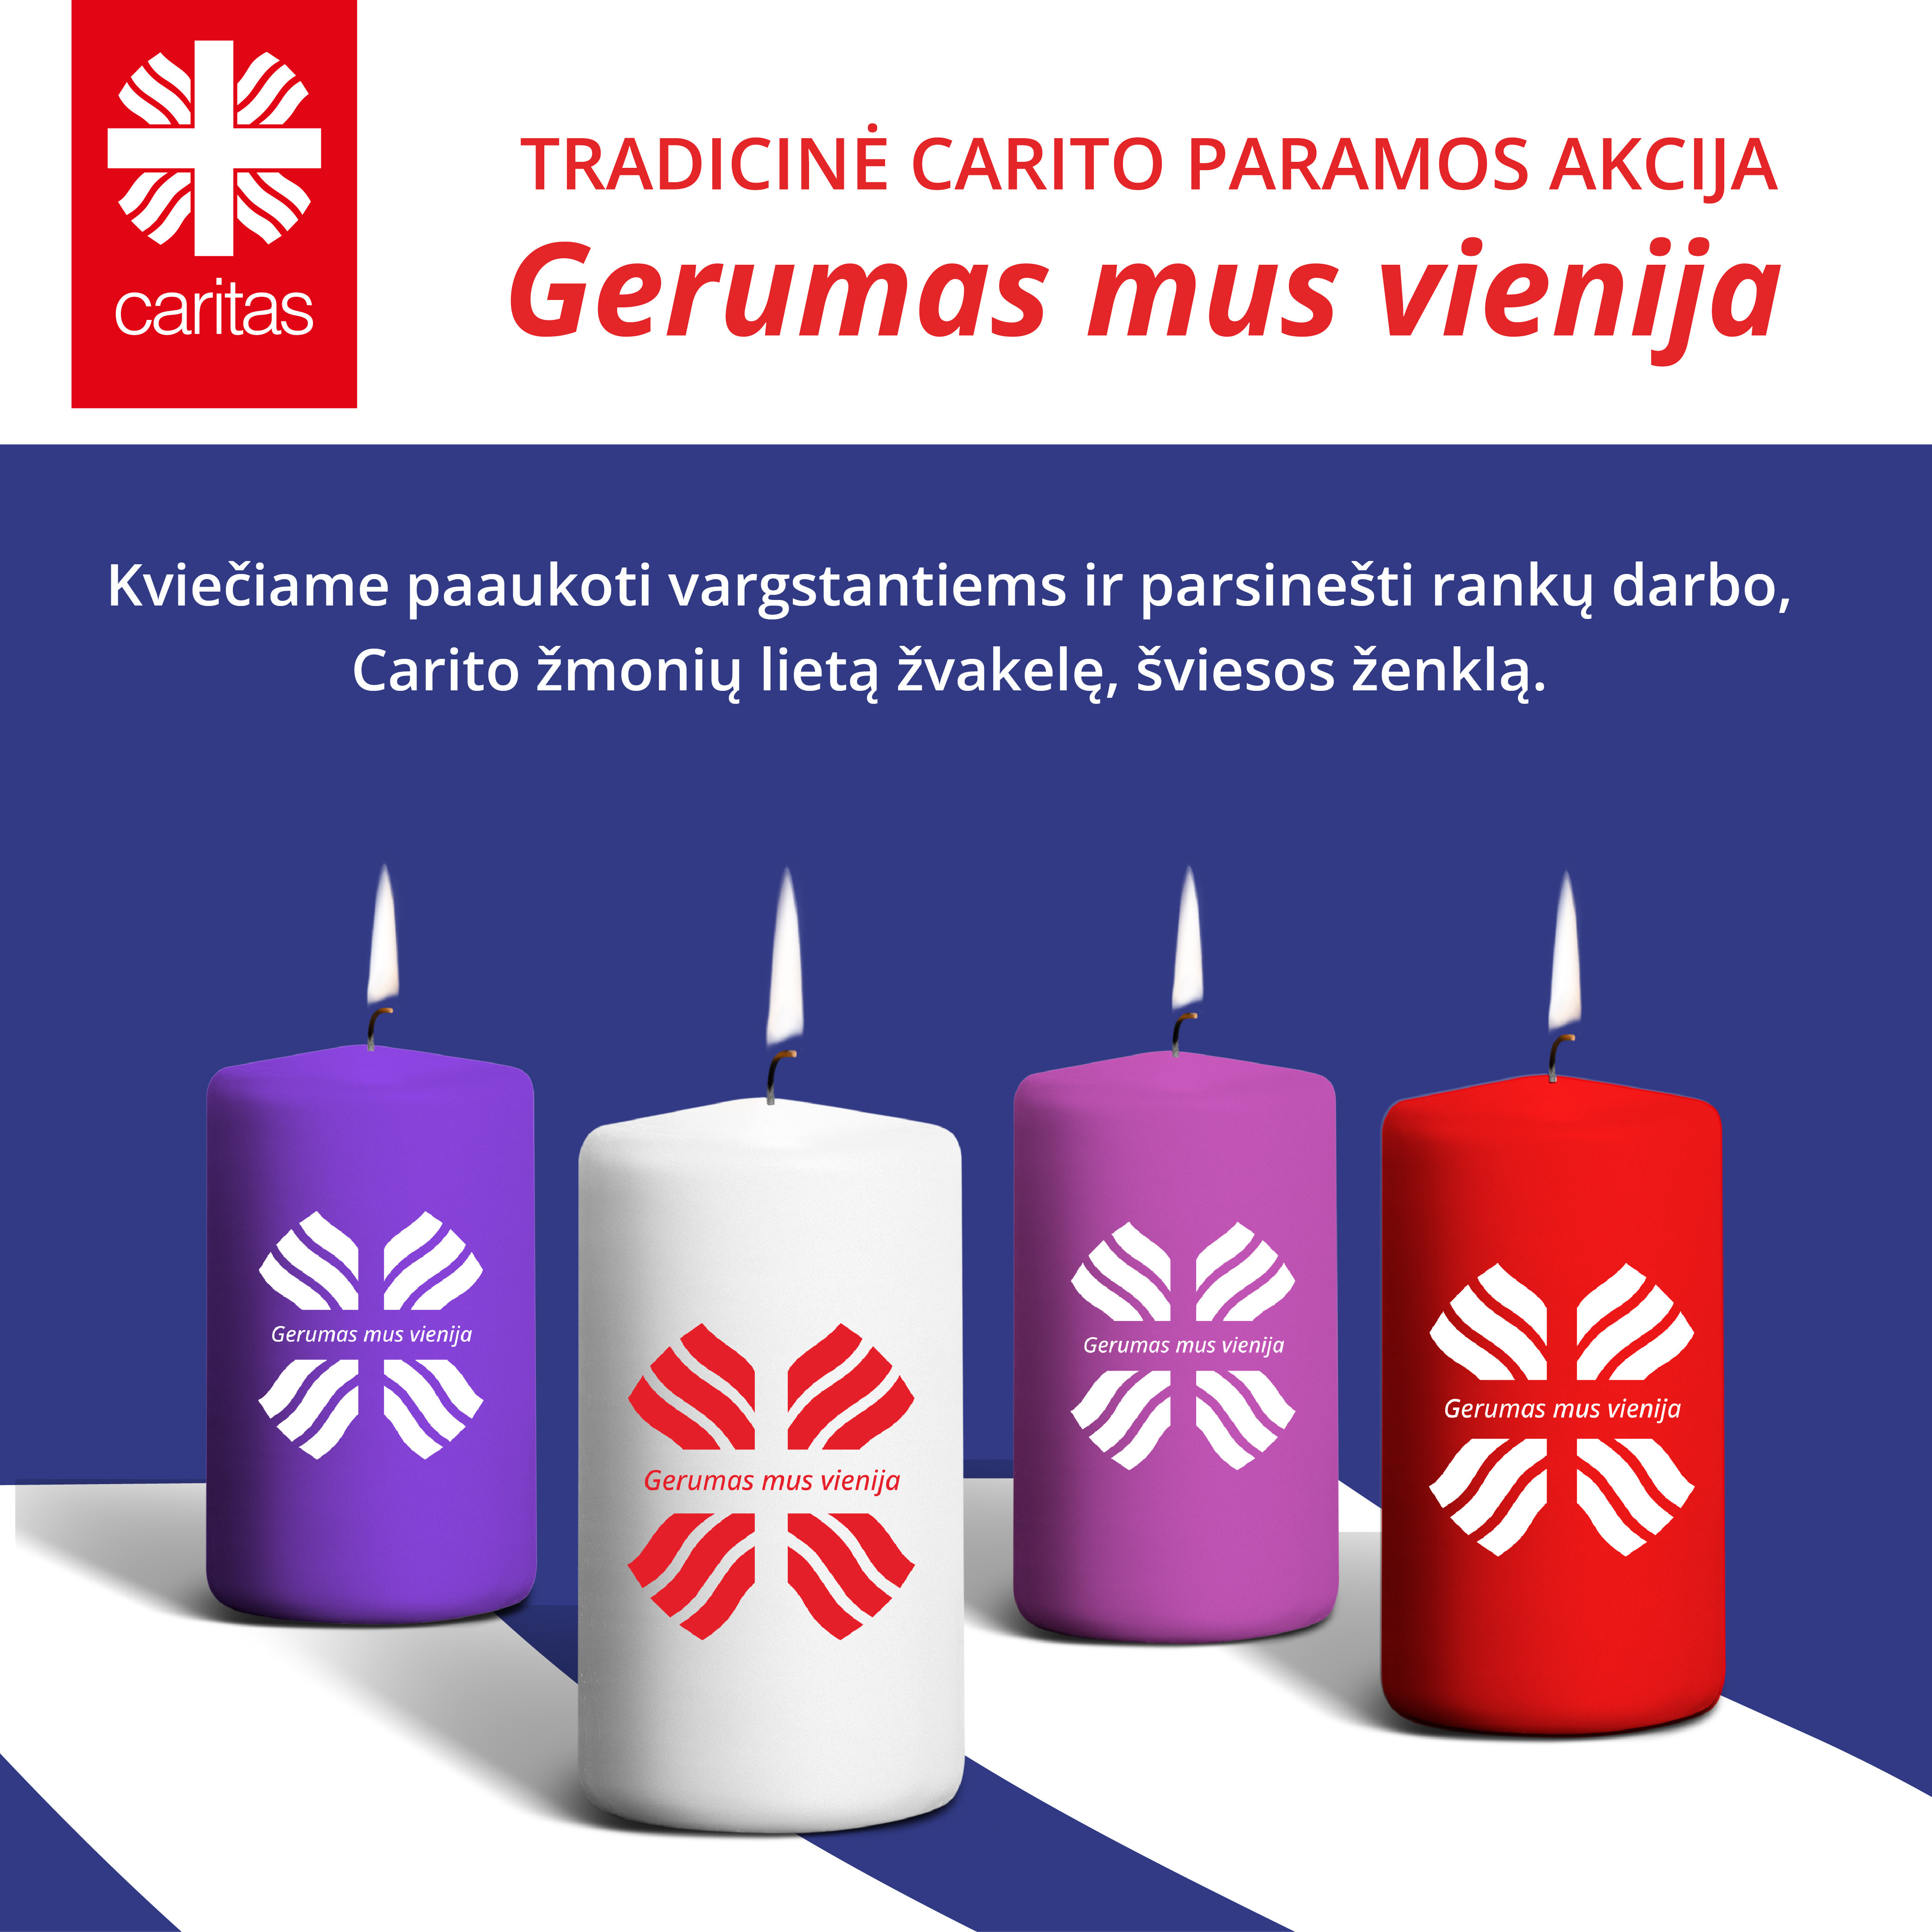 Į kelionę po Lietuvą „Caritas“ išlydi 80 tūkst. gerumo žvakelių